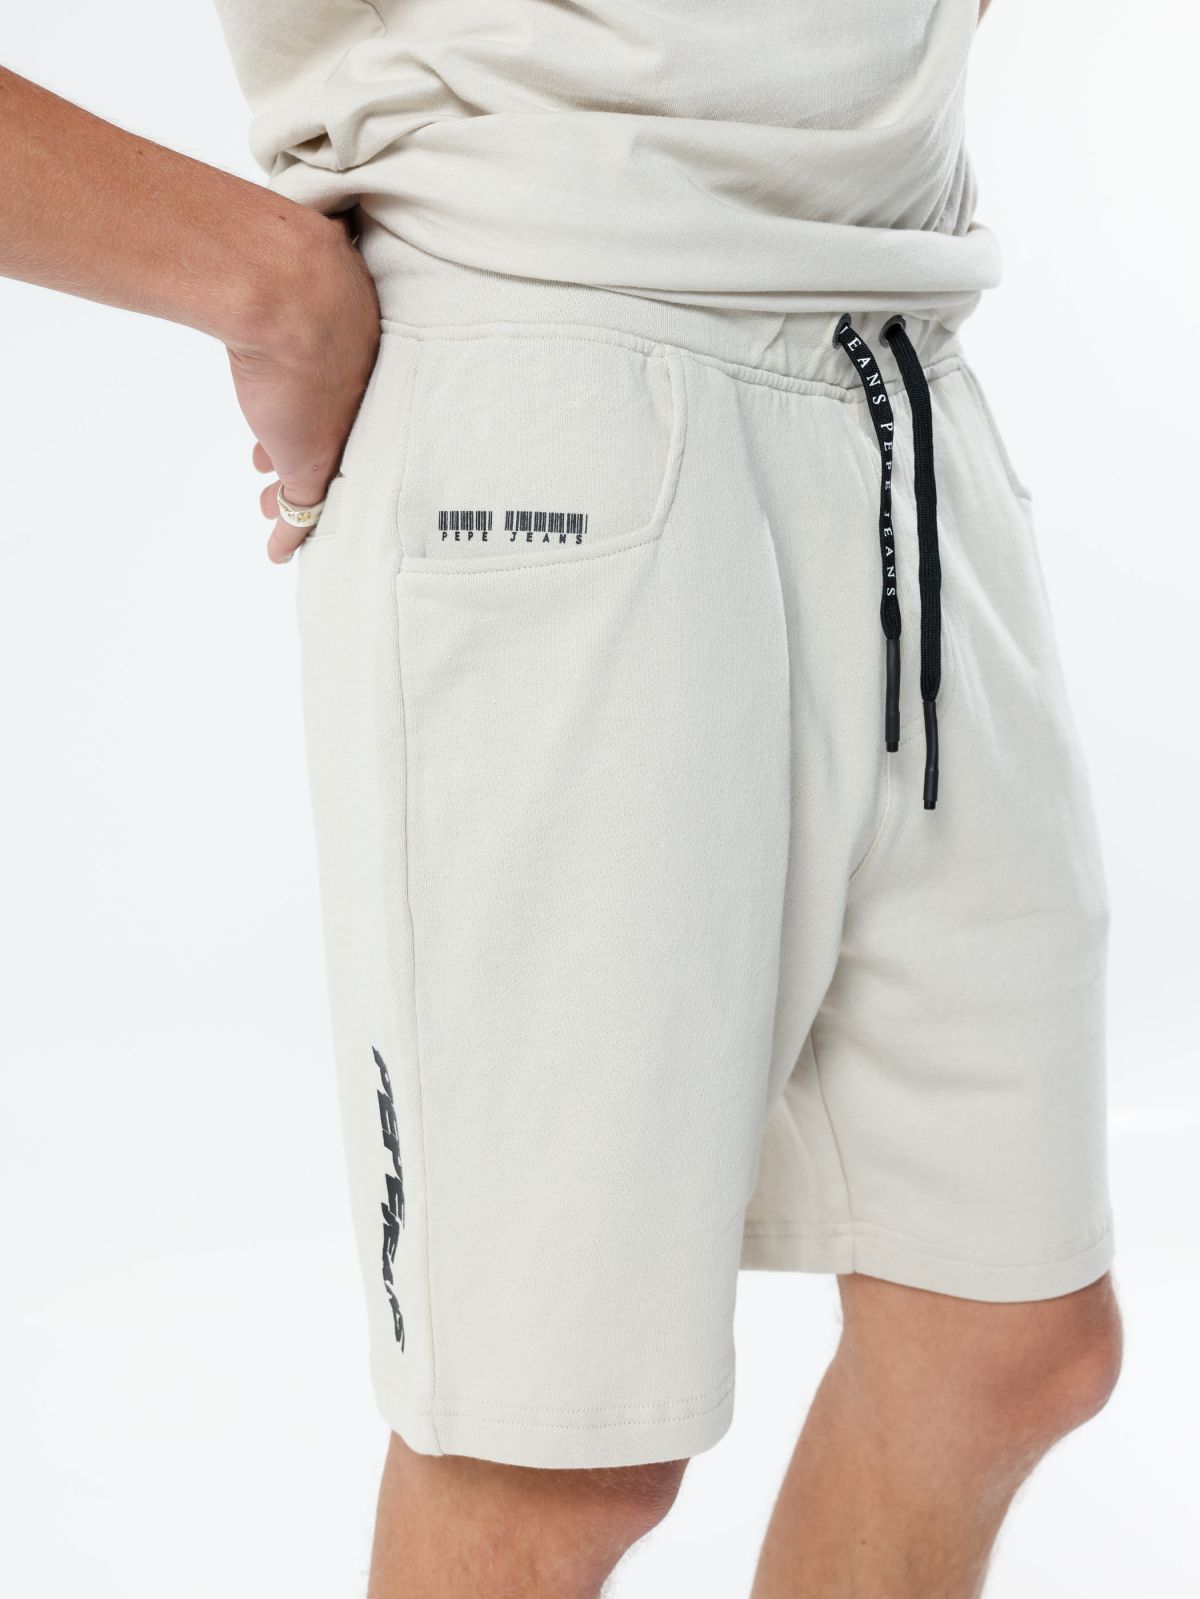  מכנסי טרנינג קצרים עם לוגו של PEPE JEANS